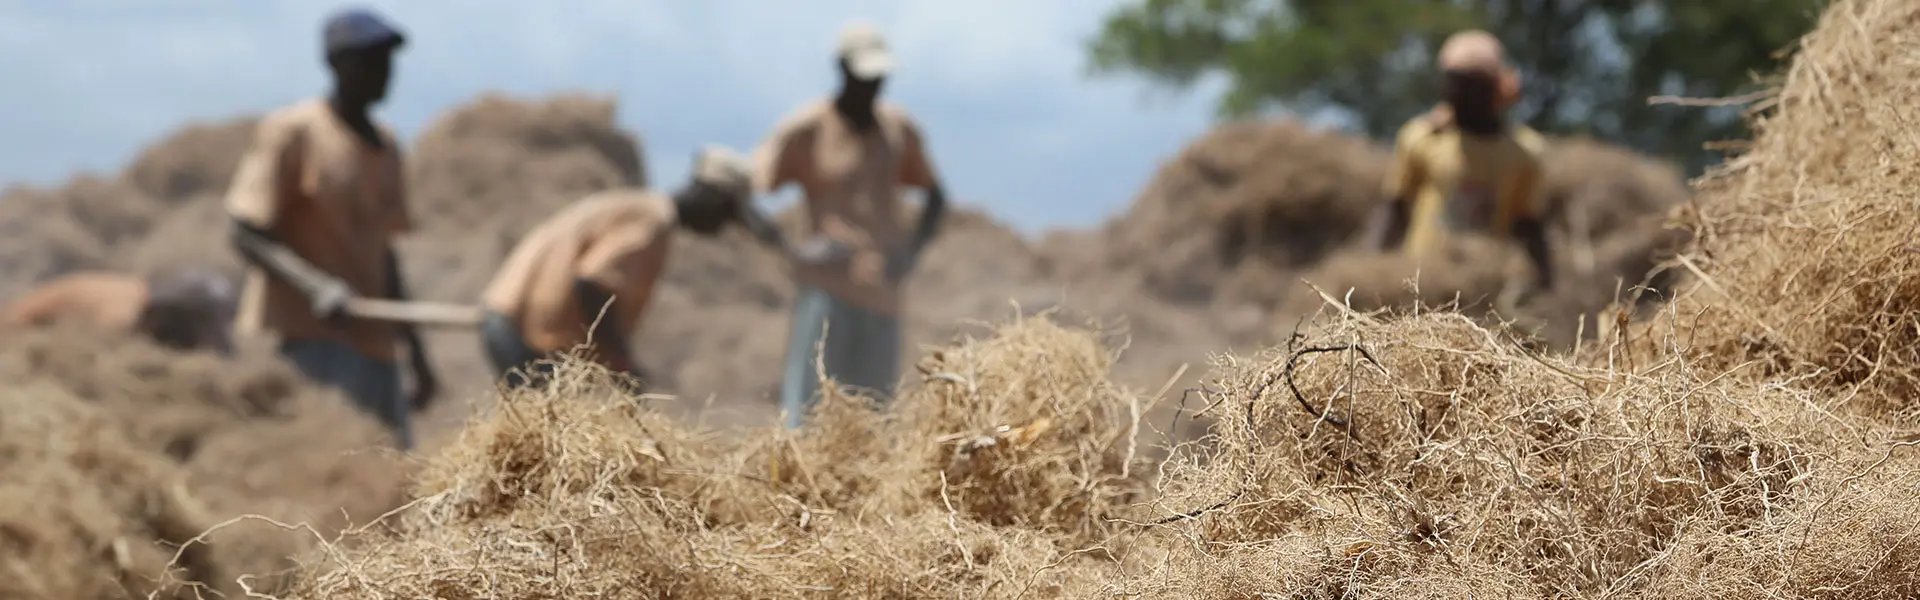 Vetiver harvest in Haiti